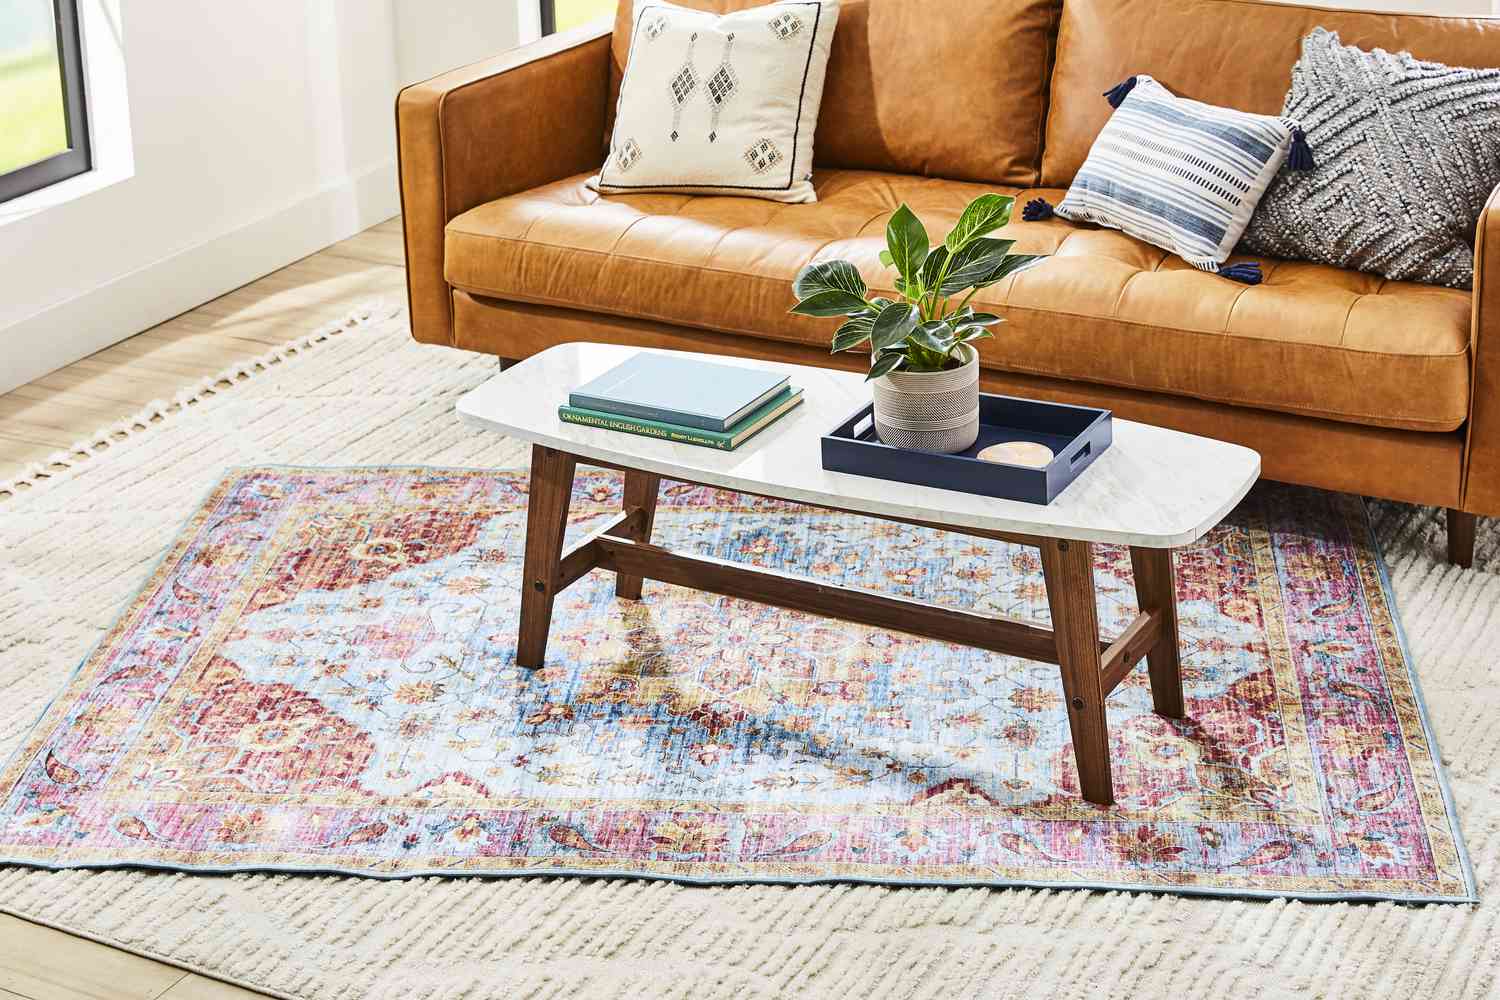 Una colorida alfombra estampada superpuesta sobre una alfombra neutra